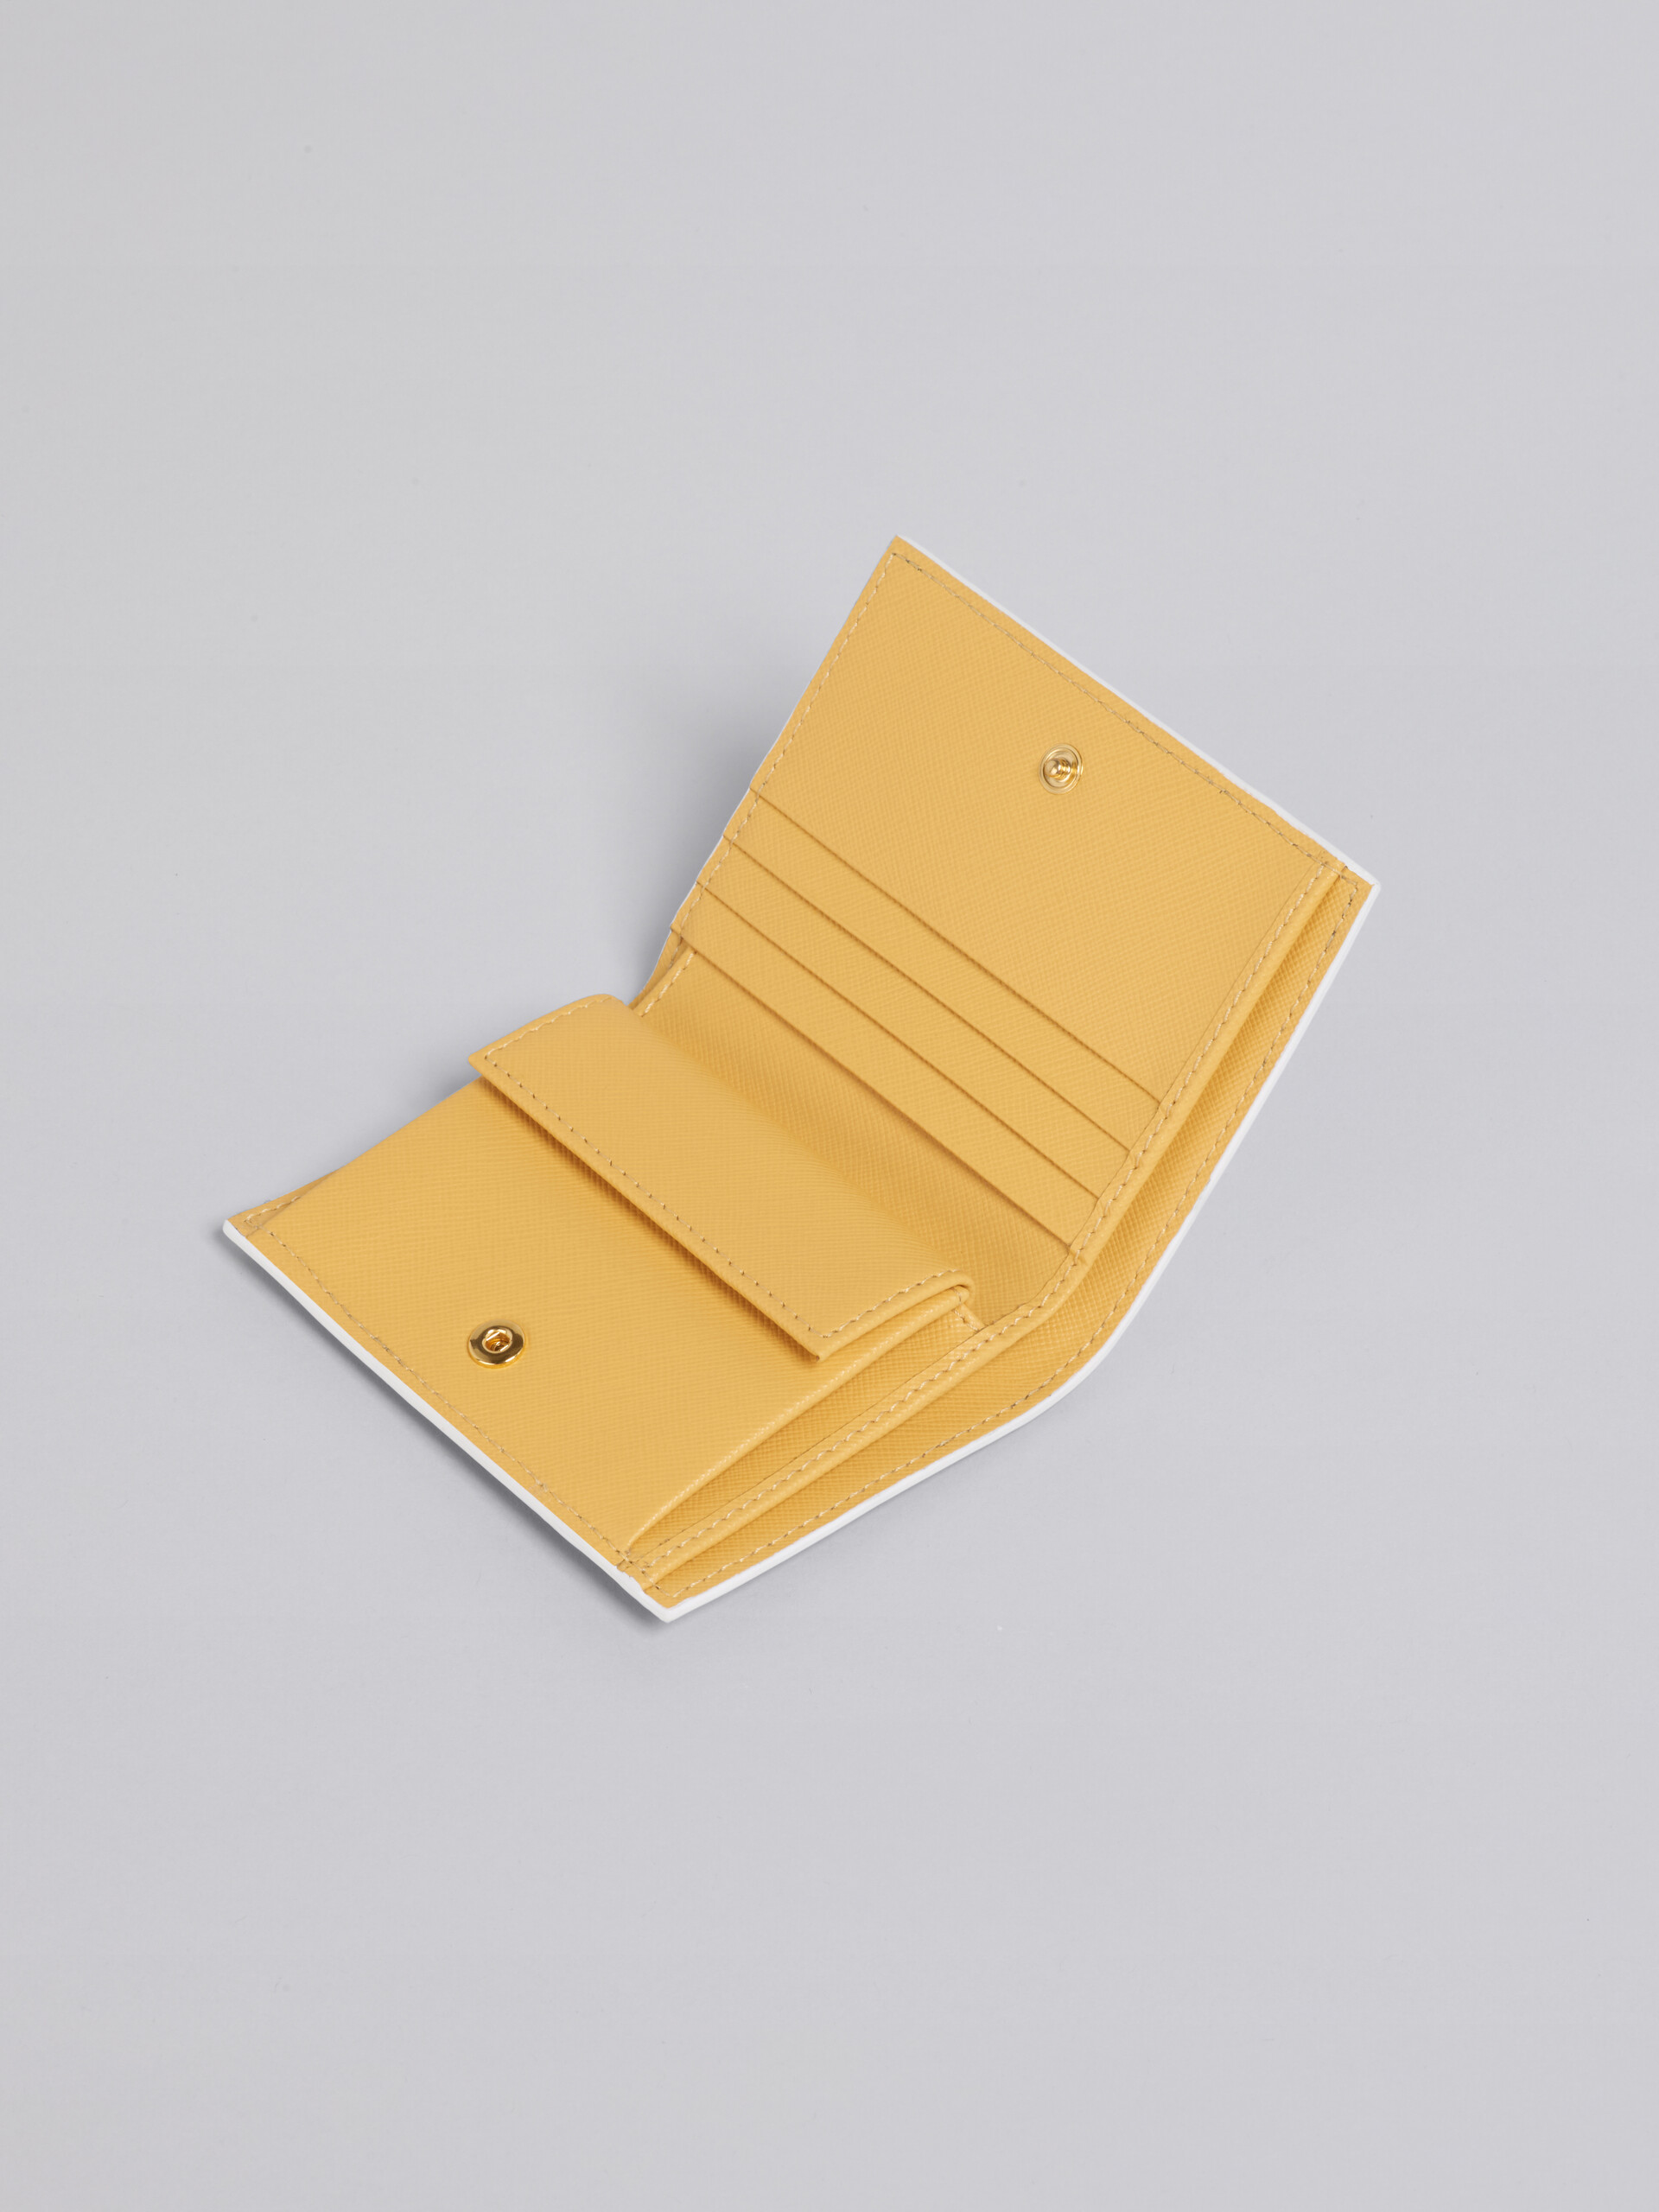 Portafoglio bi-fold in vitello saffiano monocolore giallo - Portafogli - Image 4